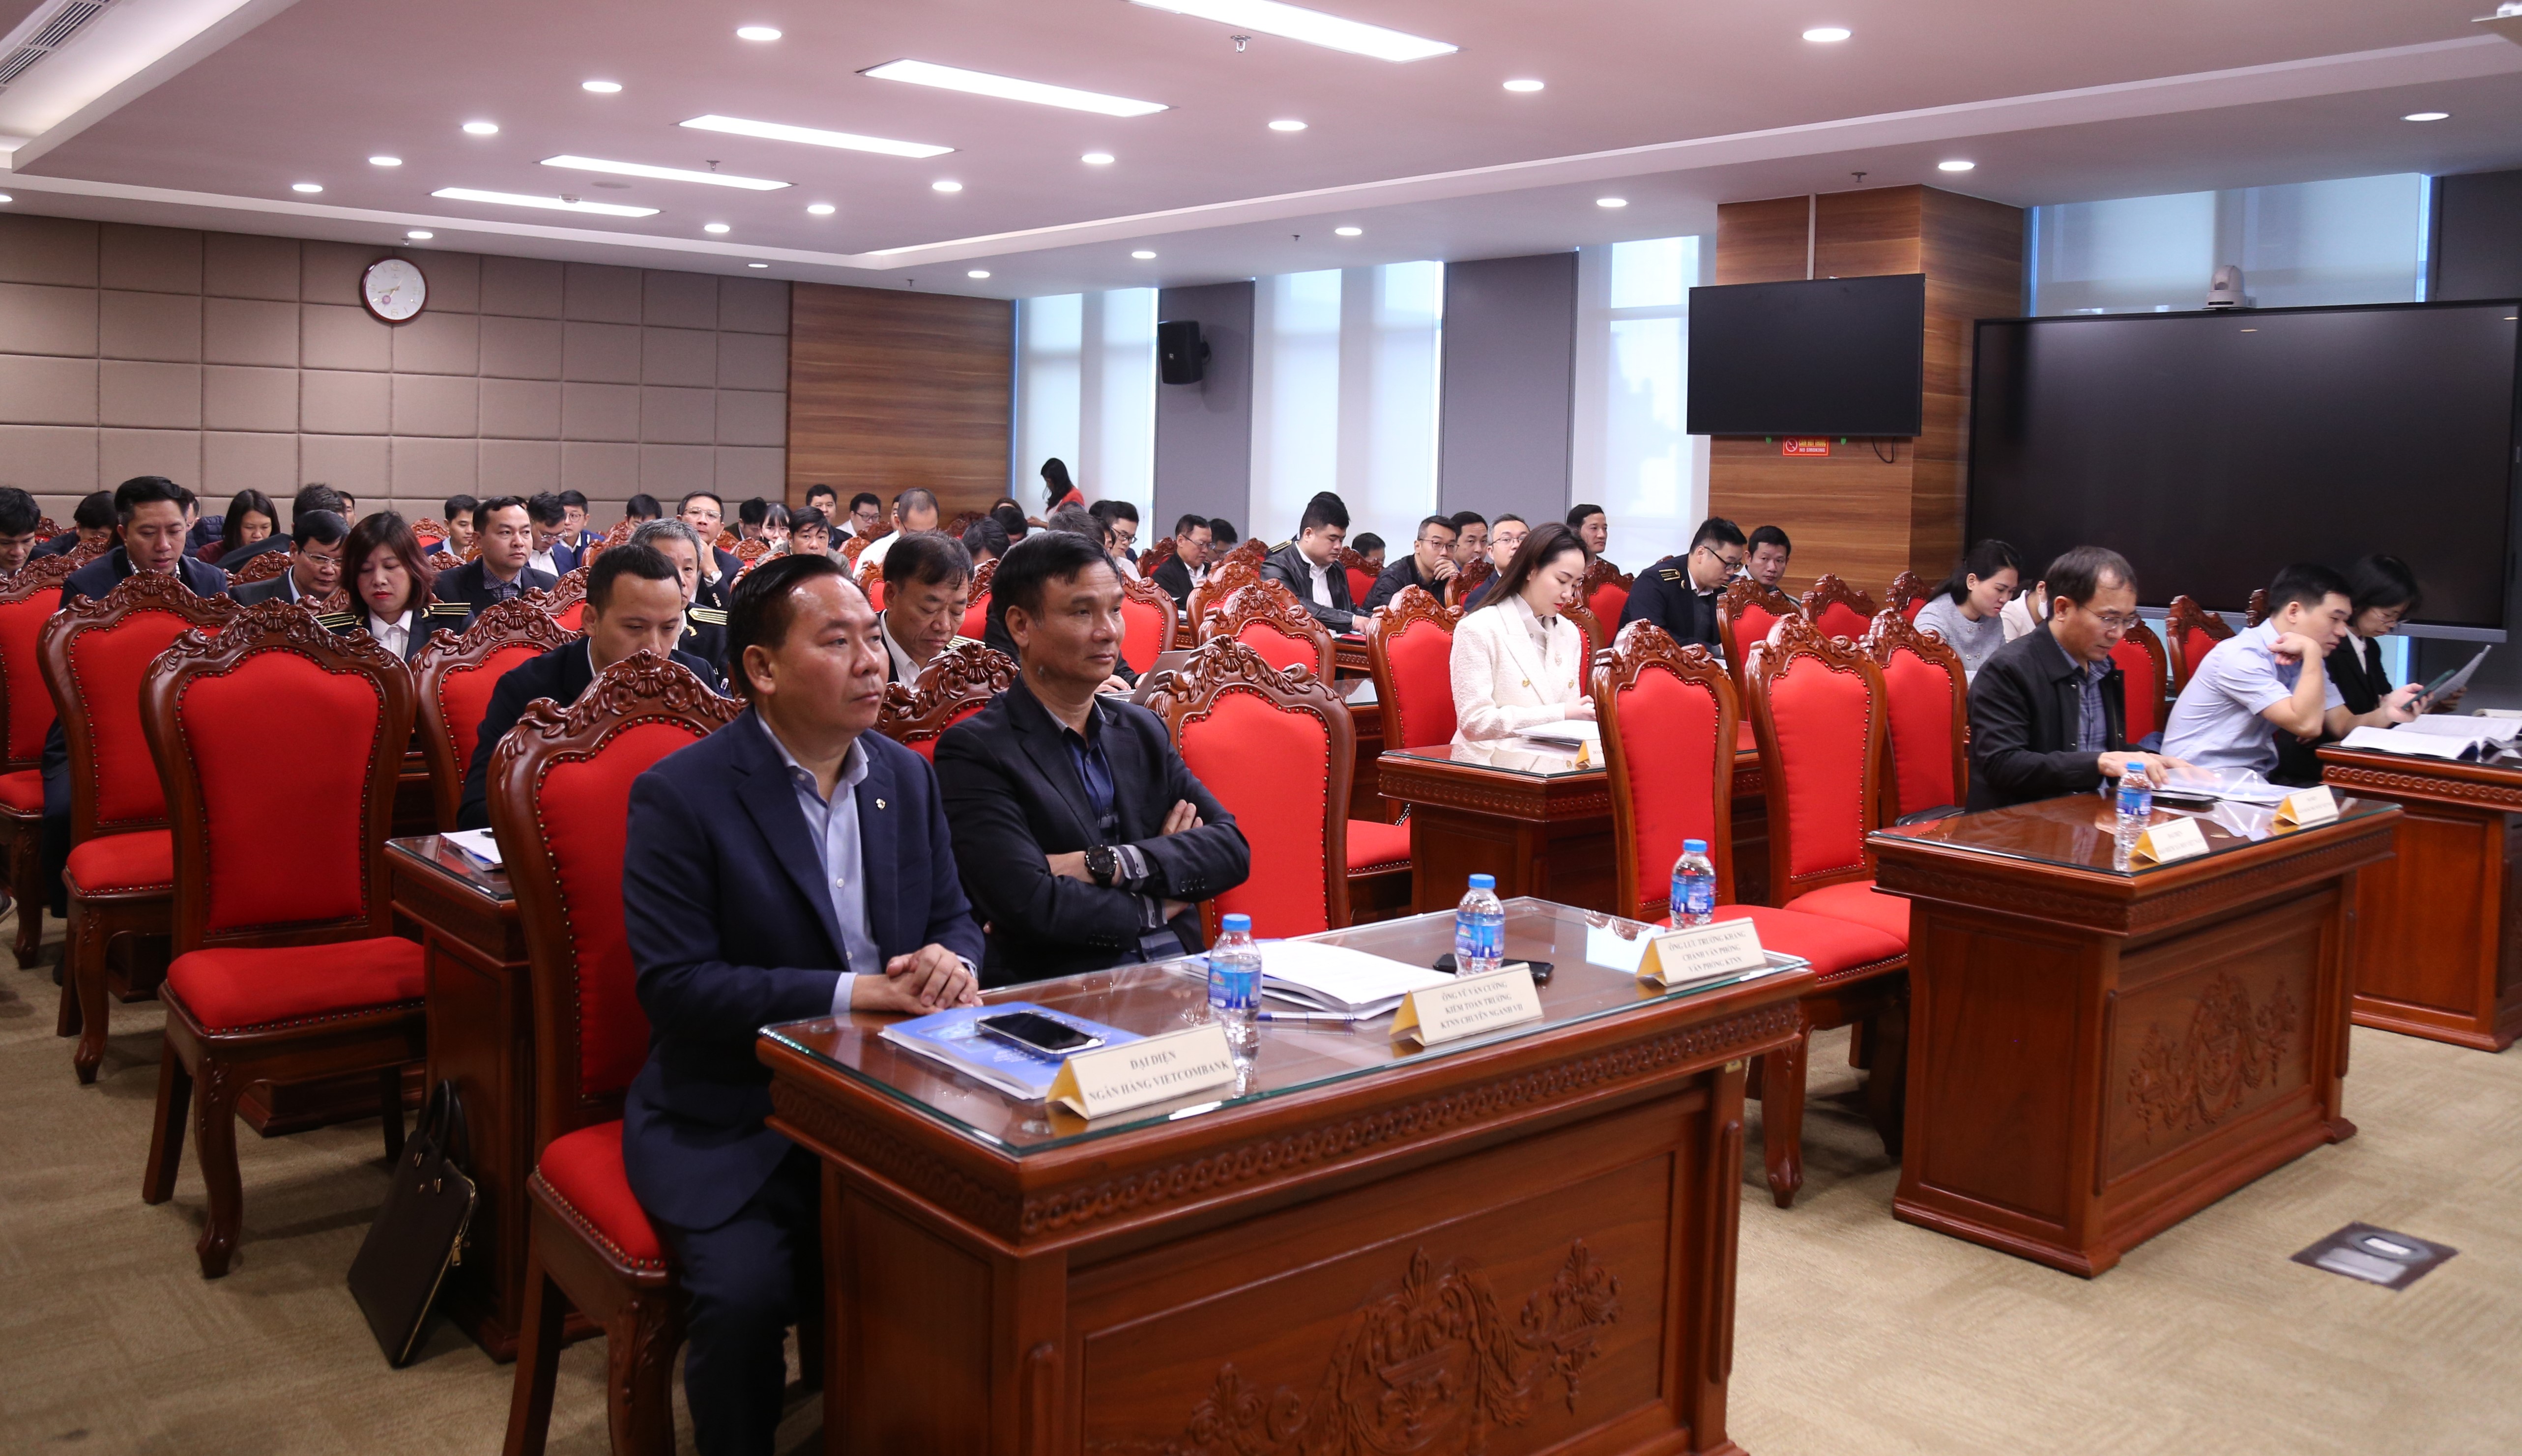 Hội thảo “Giải pháp đẩy mạnh ứng dụng công nghệ thông tin phục vụ hoạt động kiểm toán trong bối cảnh chuyển đổi số tại Việt Nam”